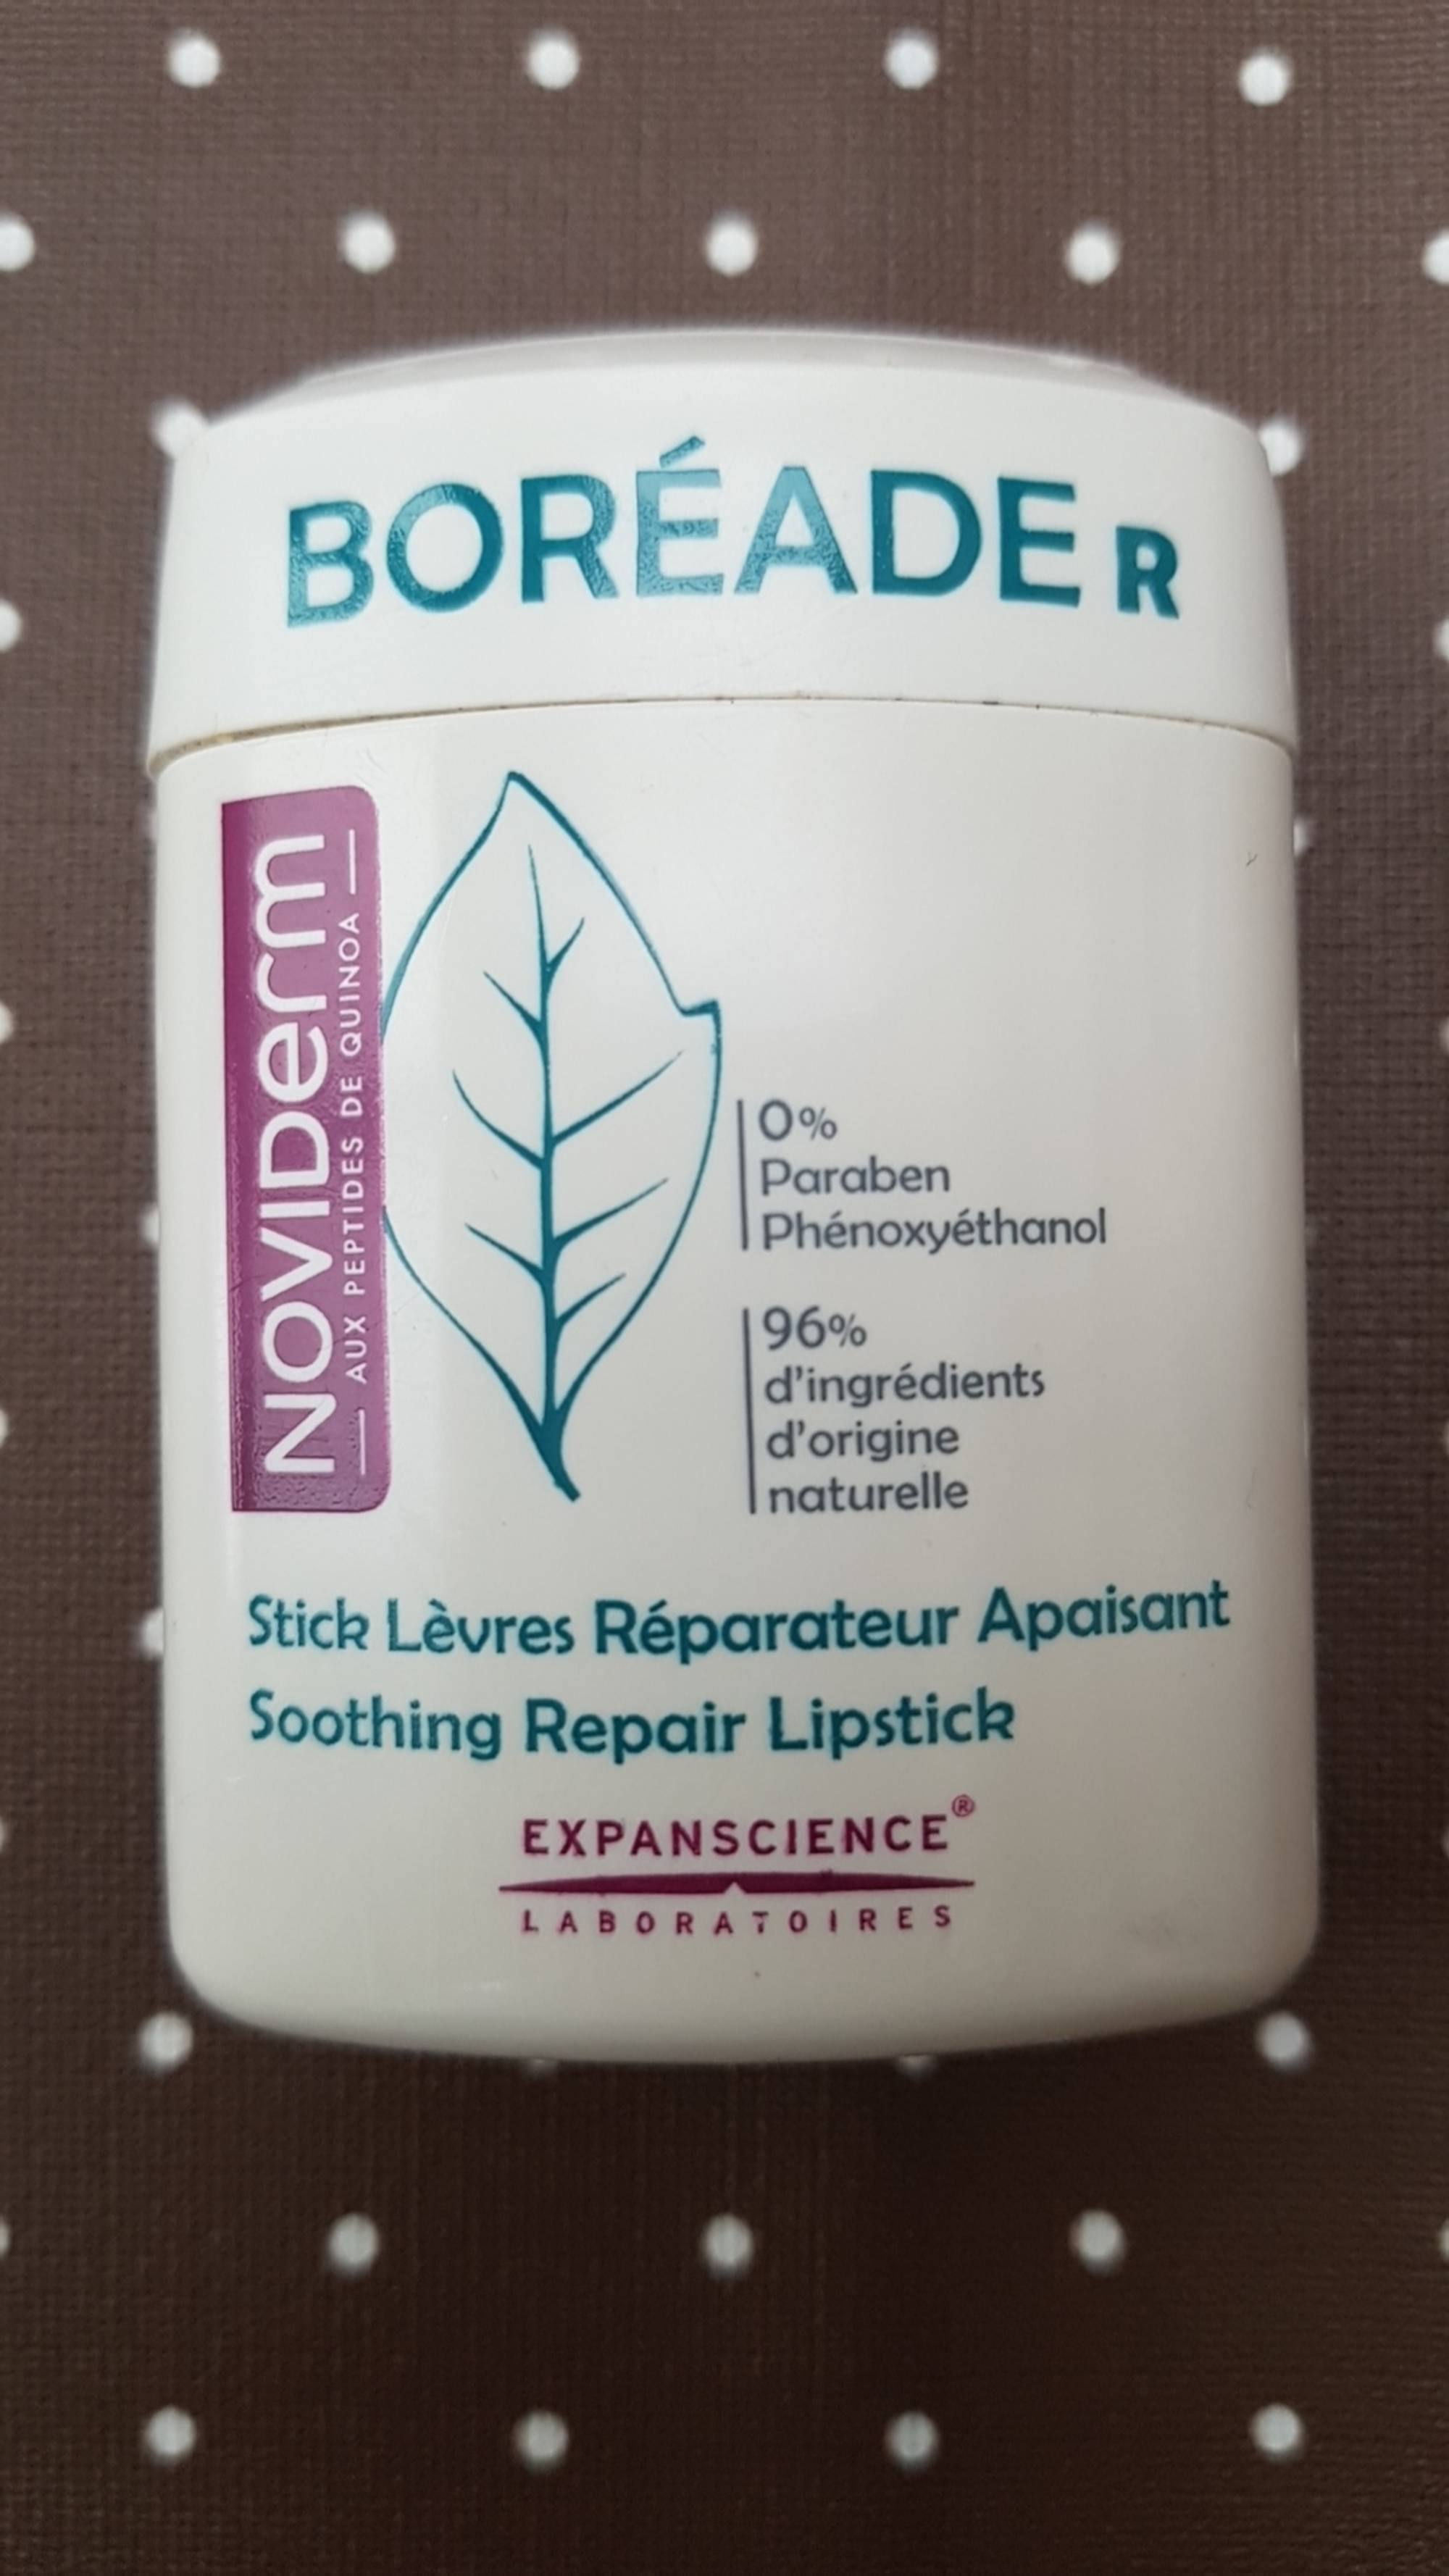 NOVIDERM - Boréade R - Stick lèvres réparateur apaisant